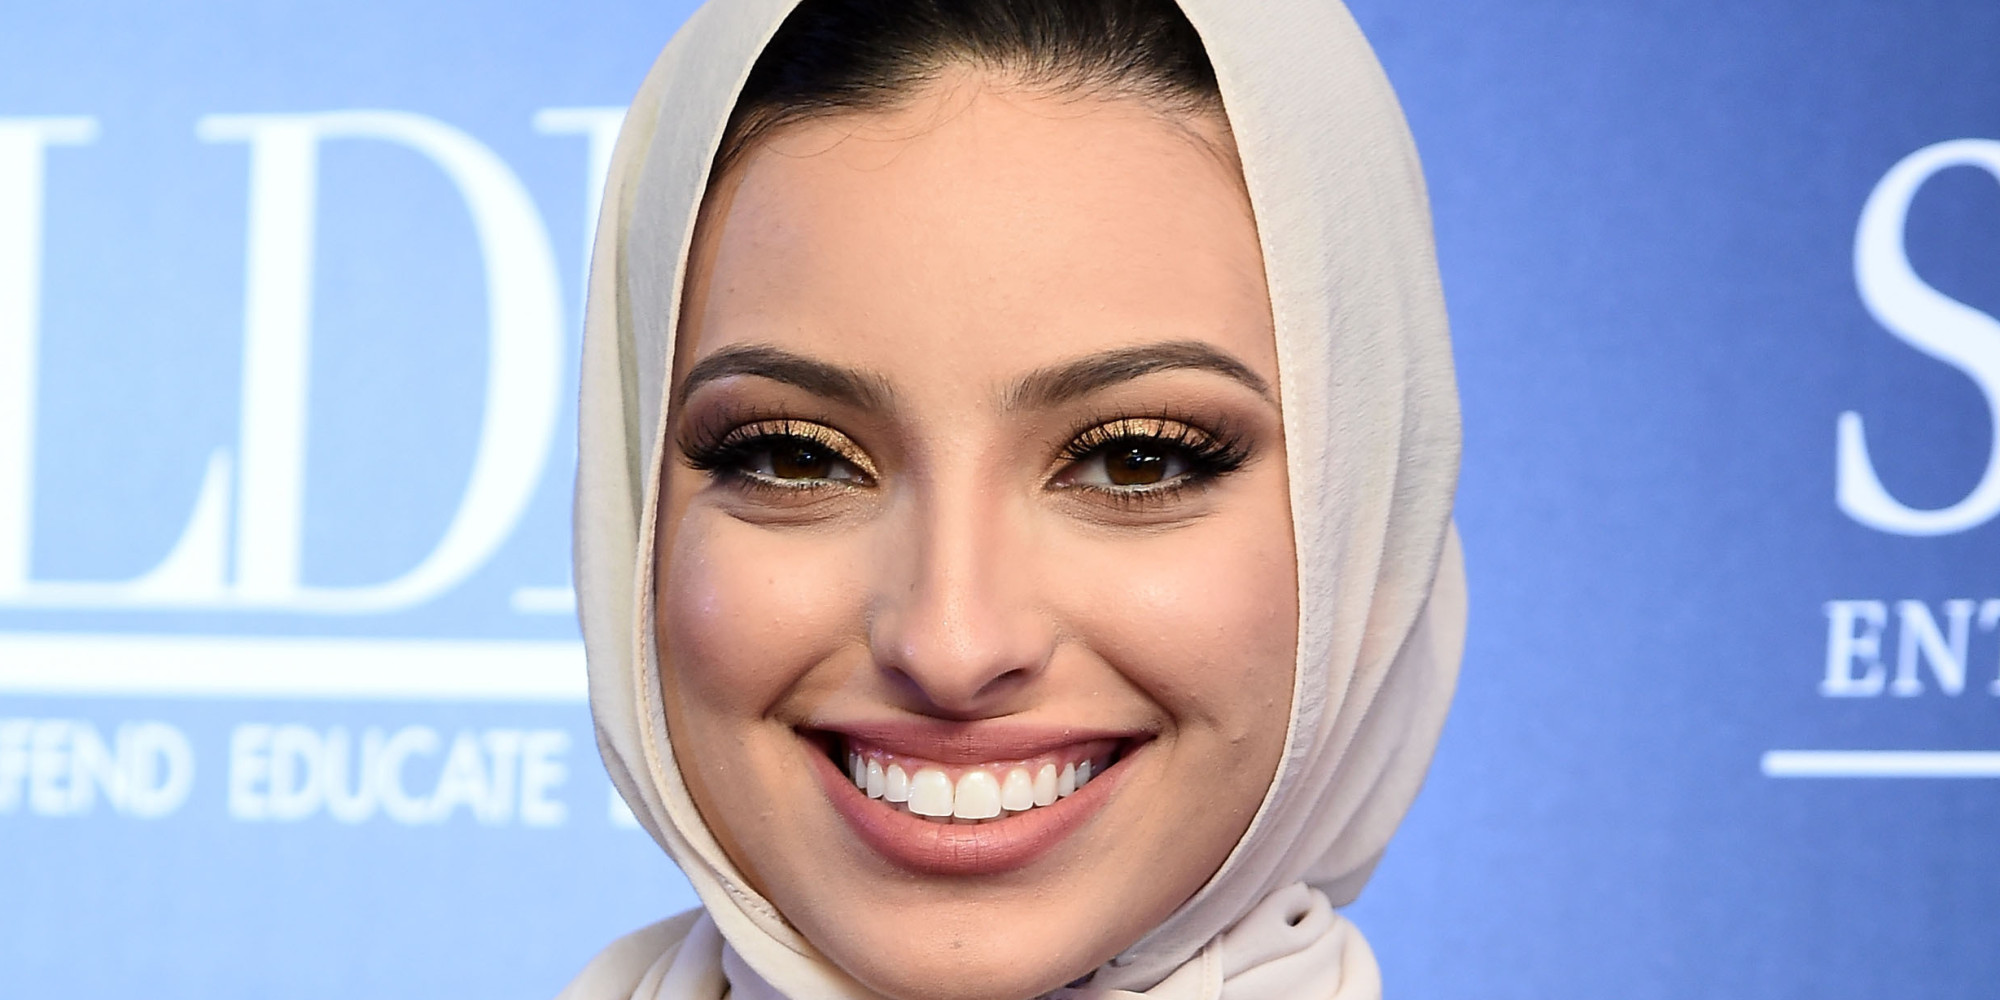 Hidzsábot viselő muszlim nő került a Playboy címlapjára